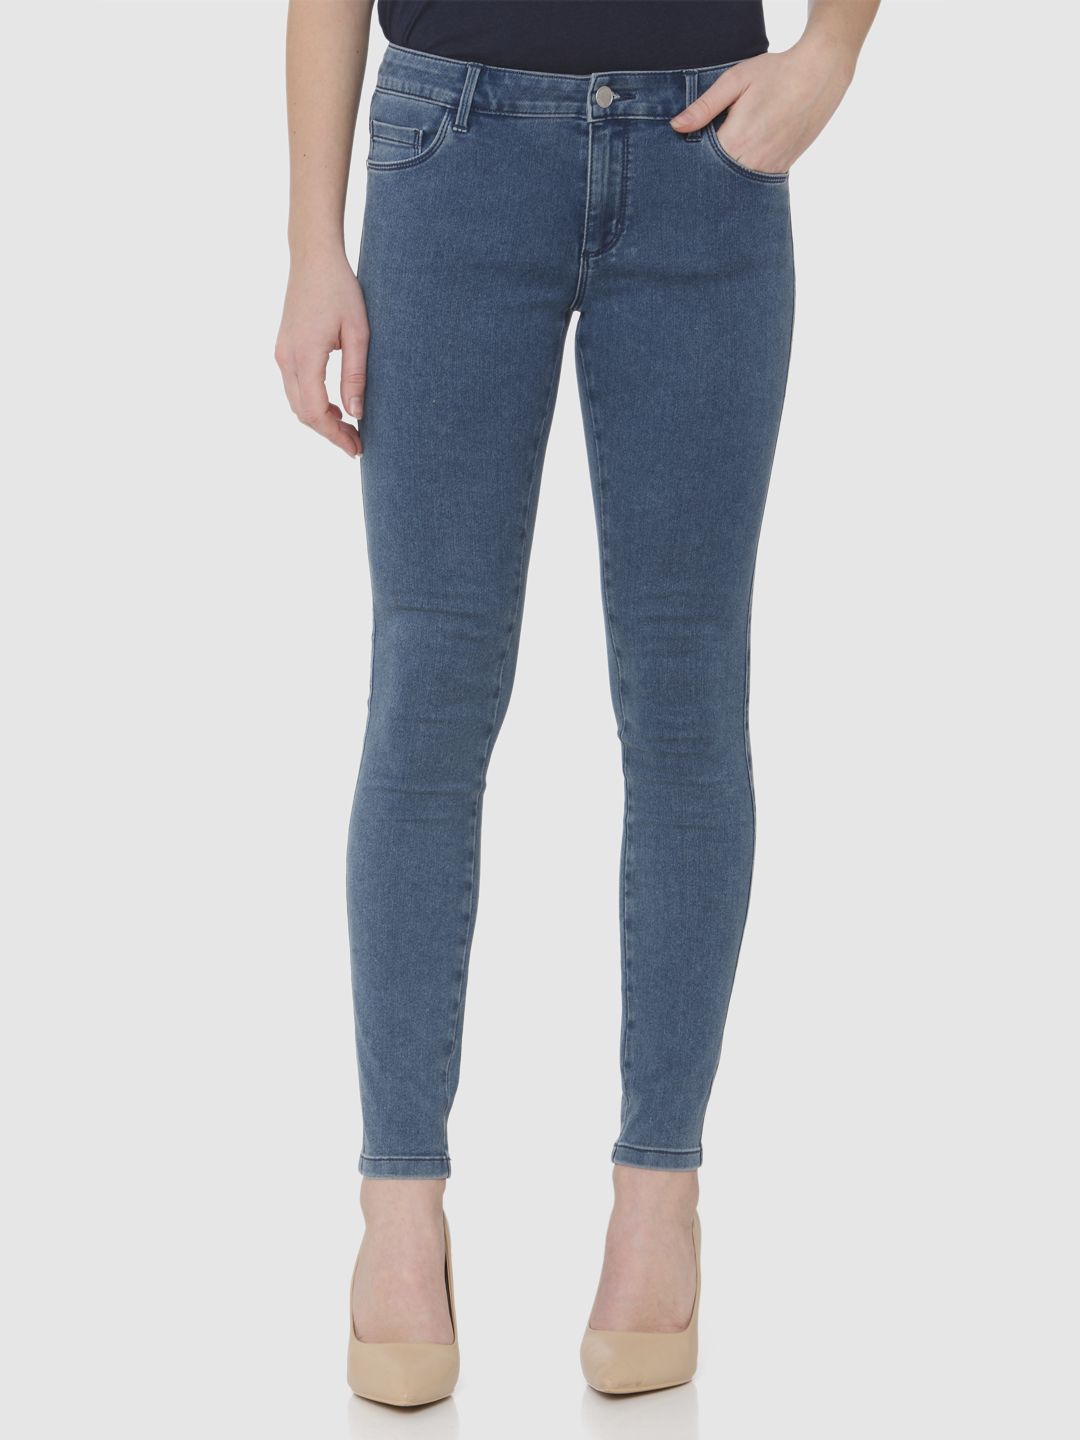 Vero Moda Women Solid Casual Wear Jeans